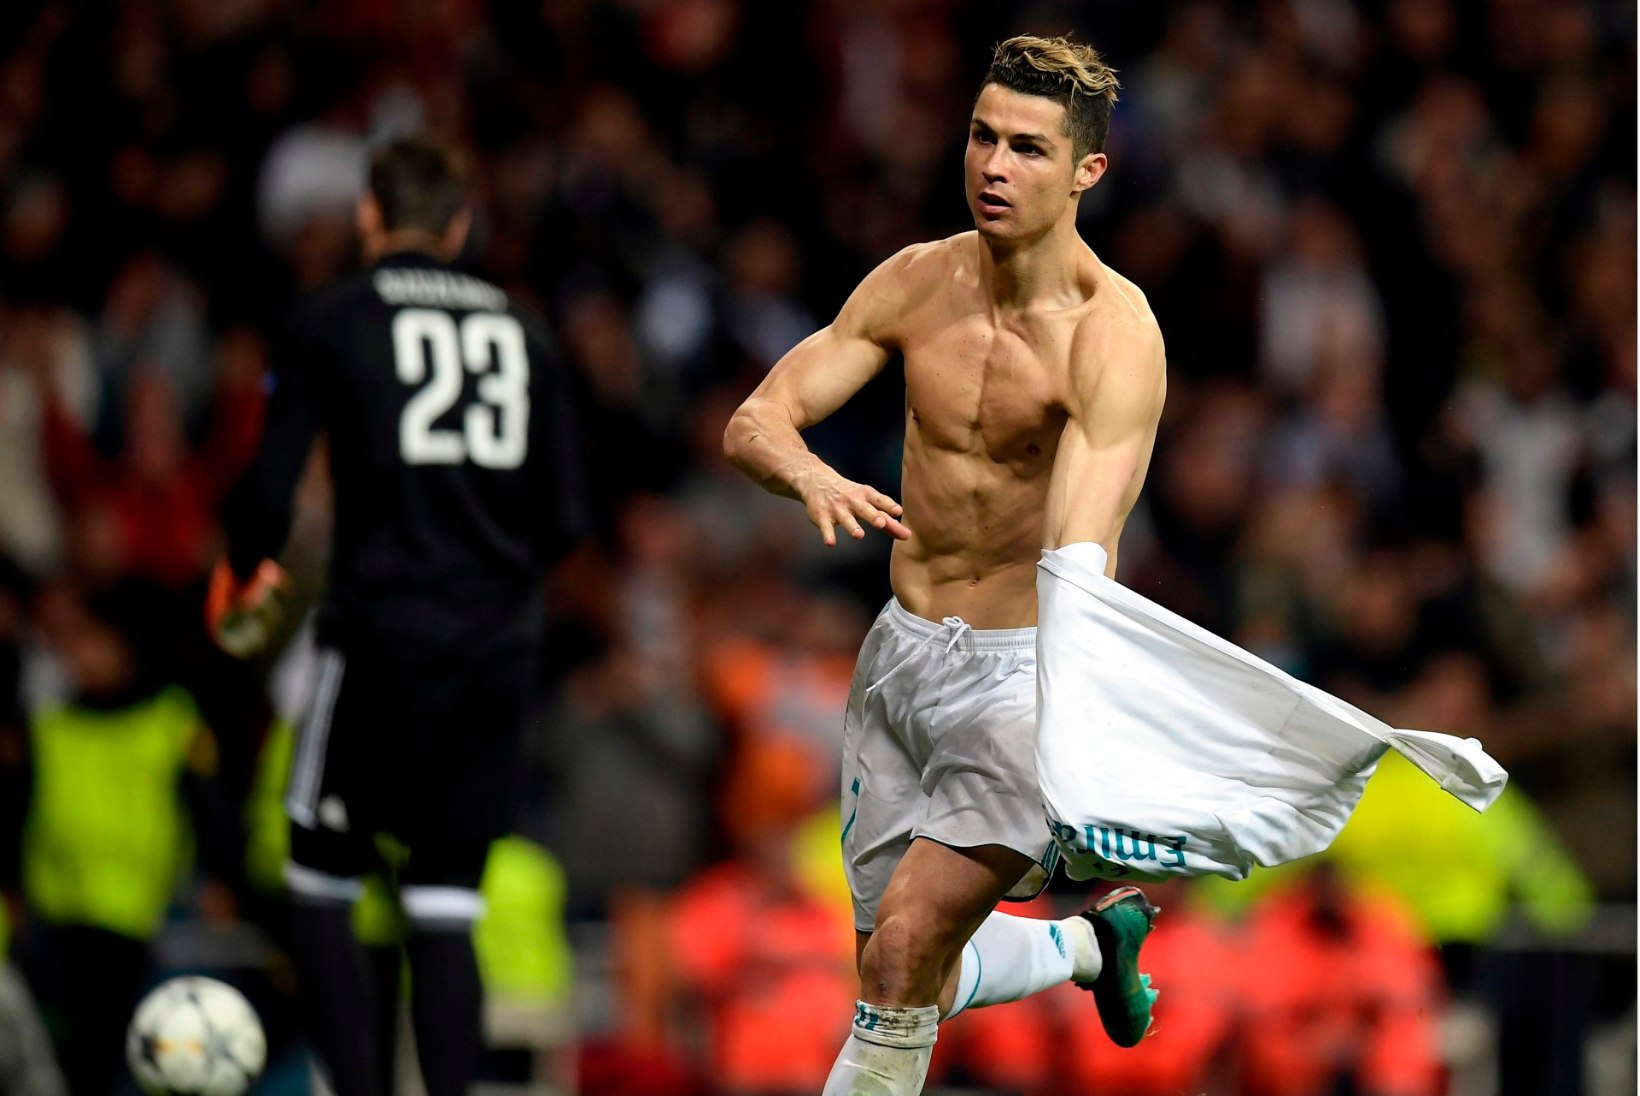 SÄRISEVALT KUUM GALERII | Lase silmal puhata piltidel, kus Ronaldo särki ei kanna!